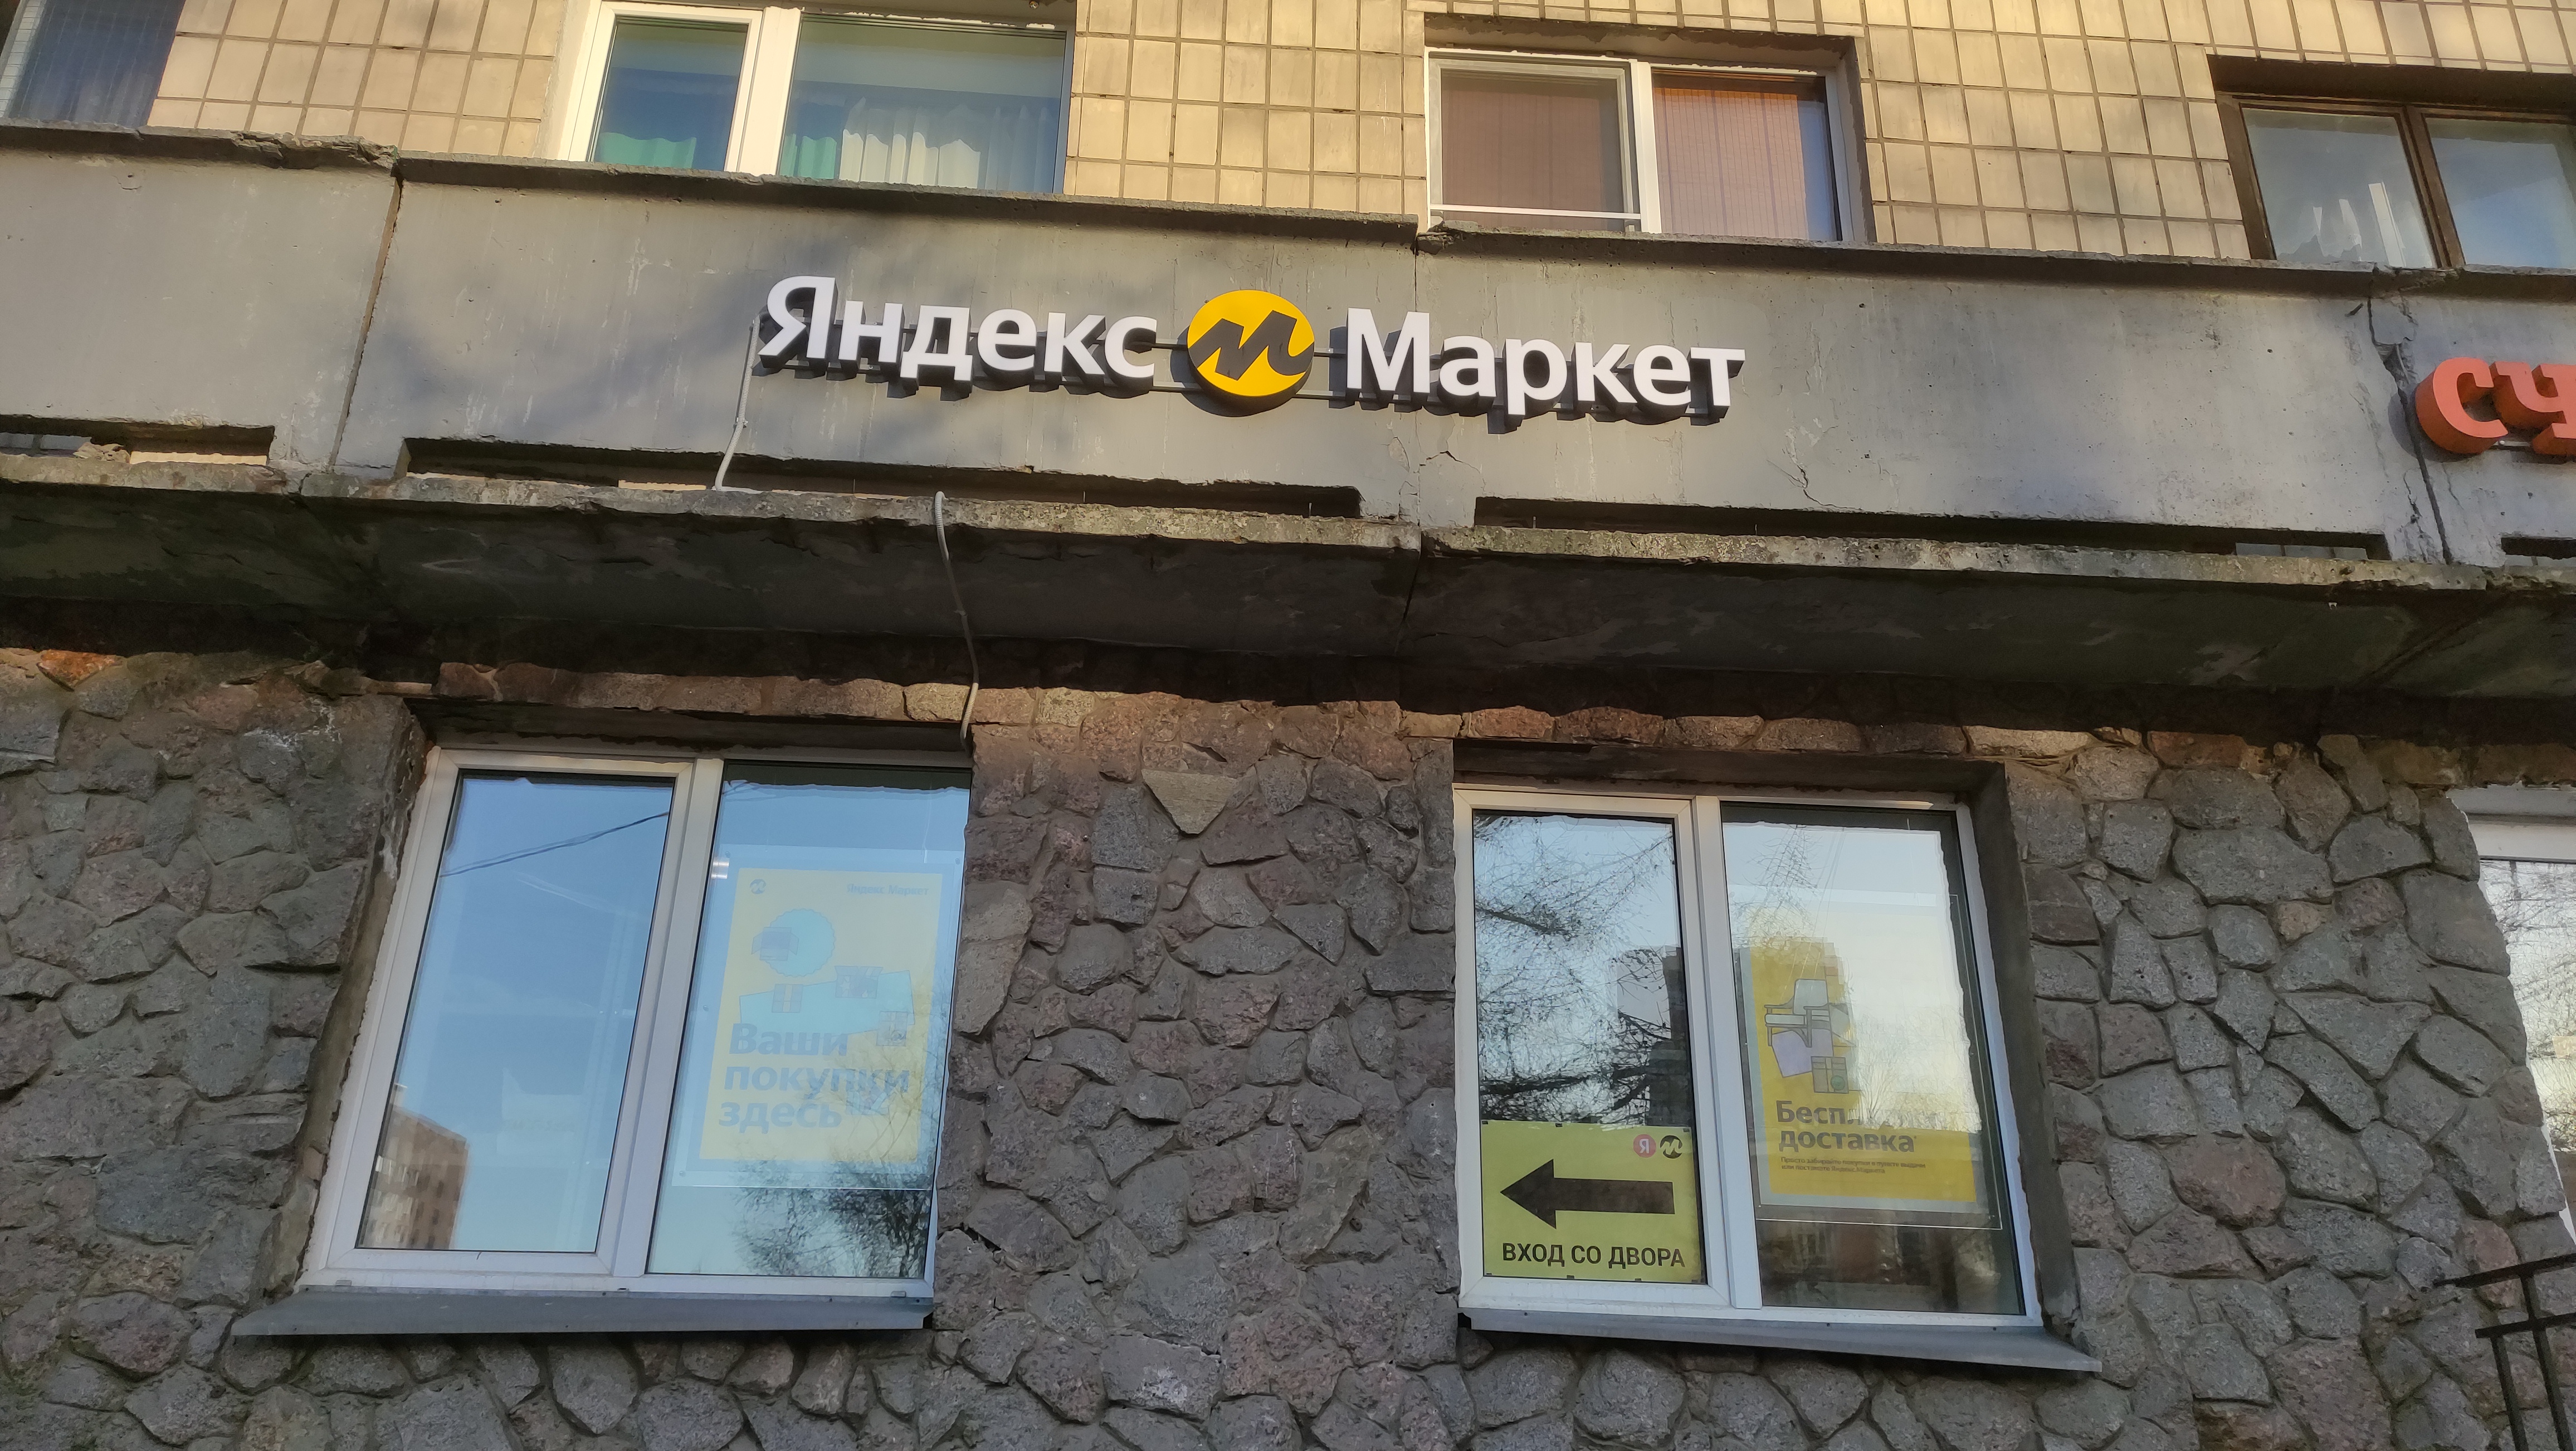 Больше не работает: Яндекс Маркет, пункт выдачи, Санкт-Петербург, Замшина  улица, 33 — Яндекс Карты